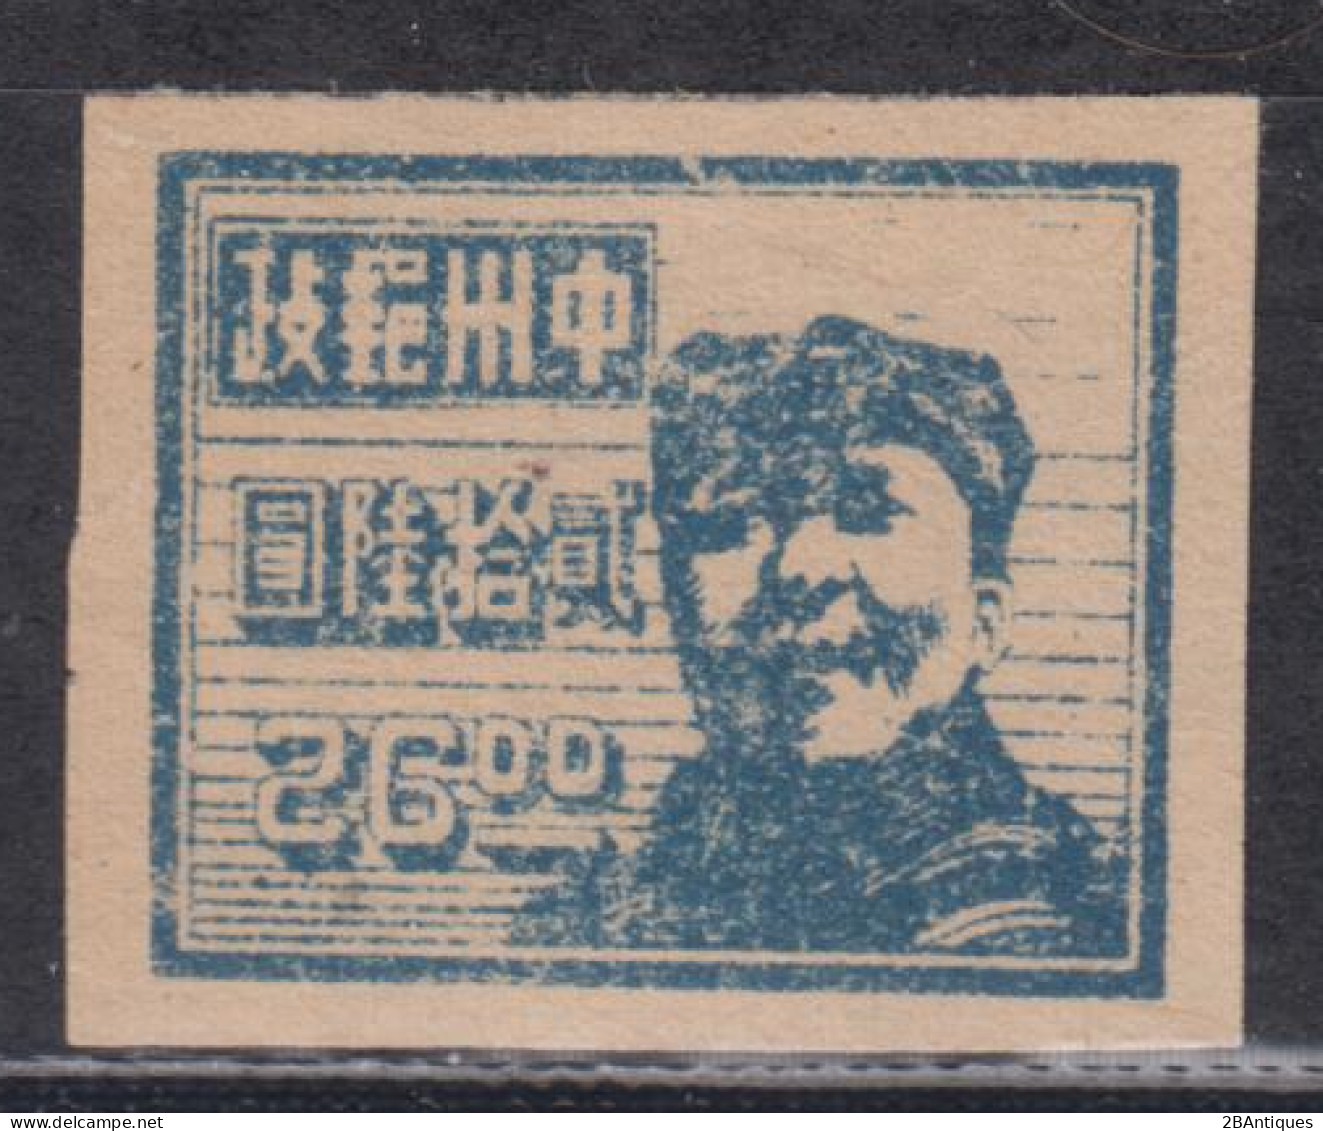 CENTRAL CHINA 1948 - Mao - Zentralchina 1948-49